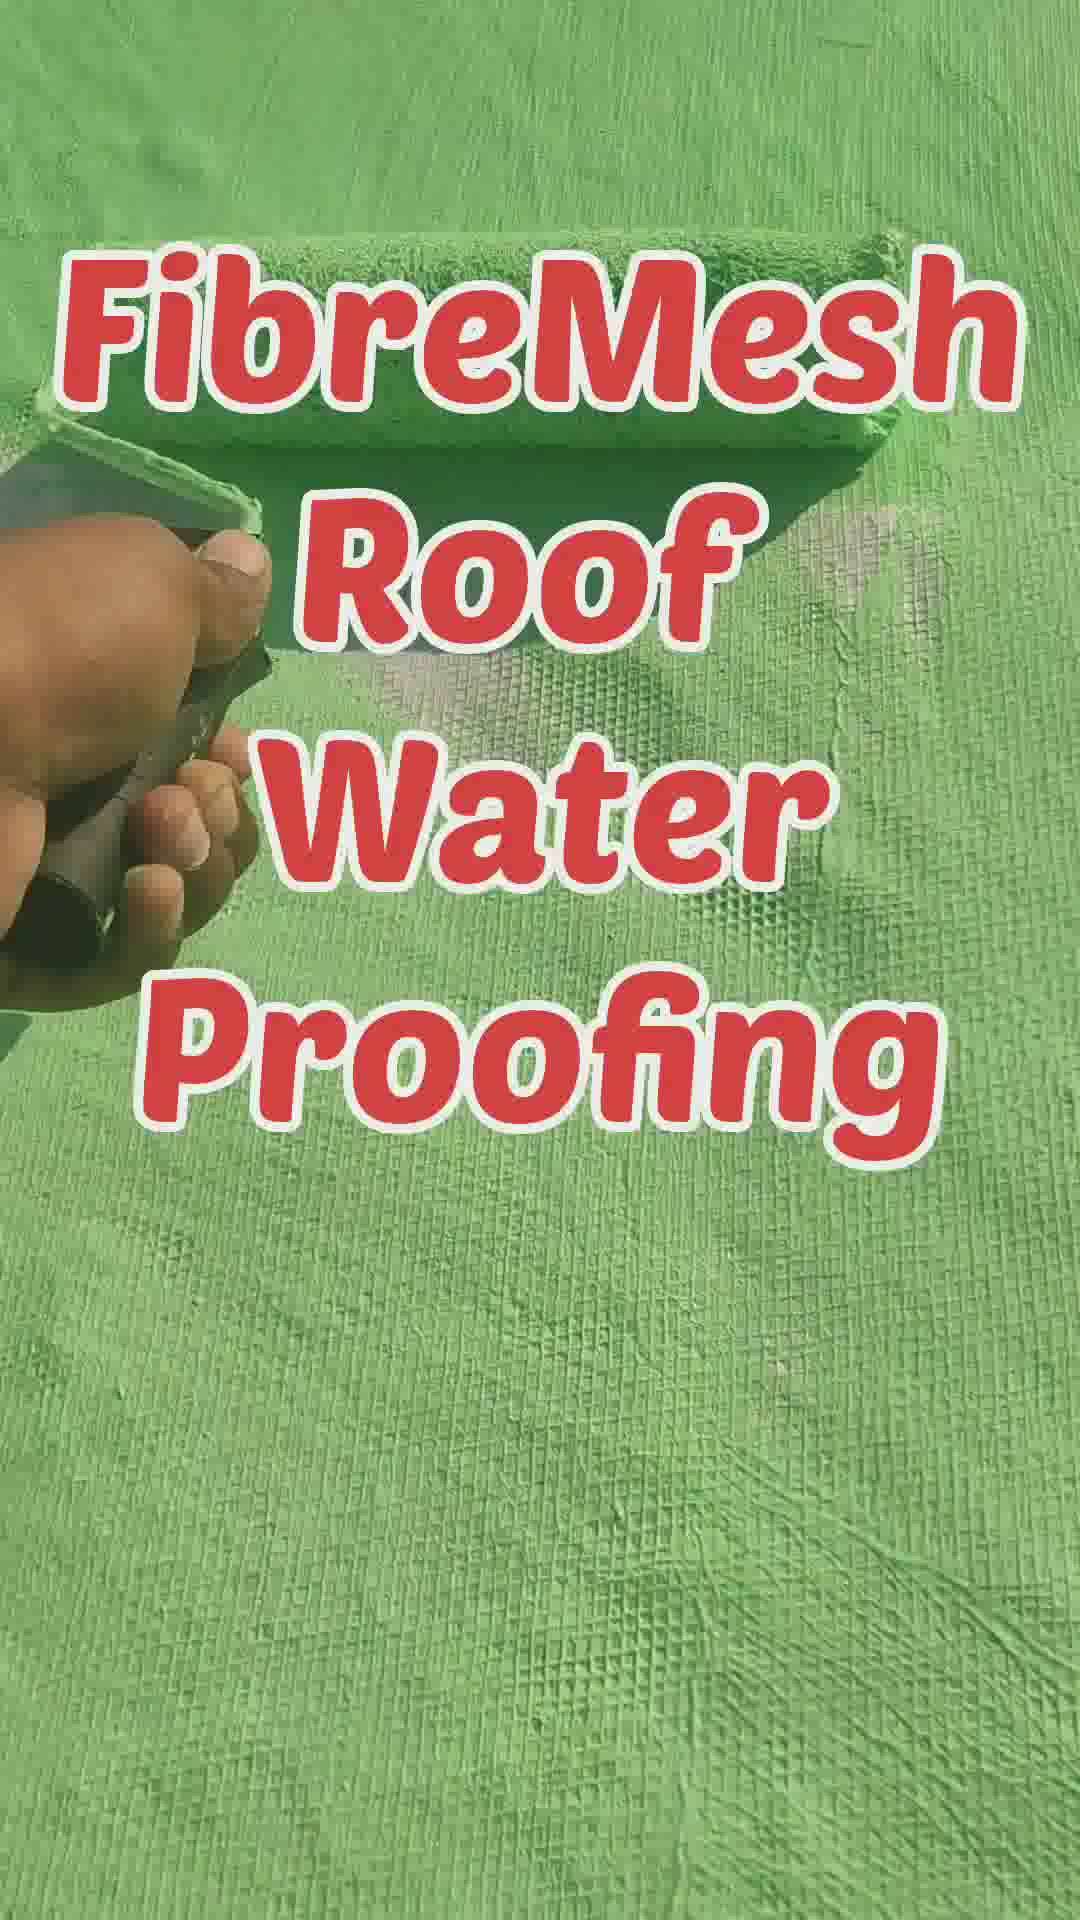 fibre mesh roof waterproofing treatment #WaterProofing